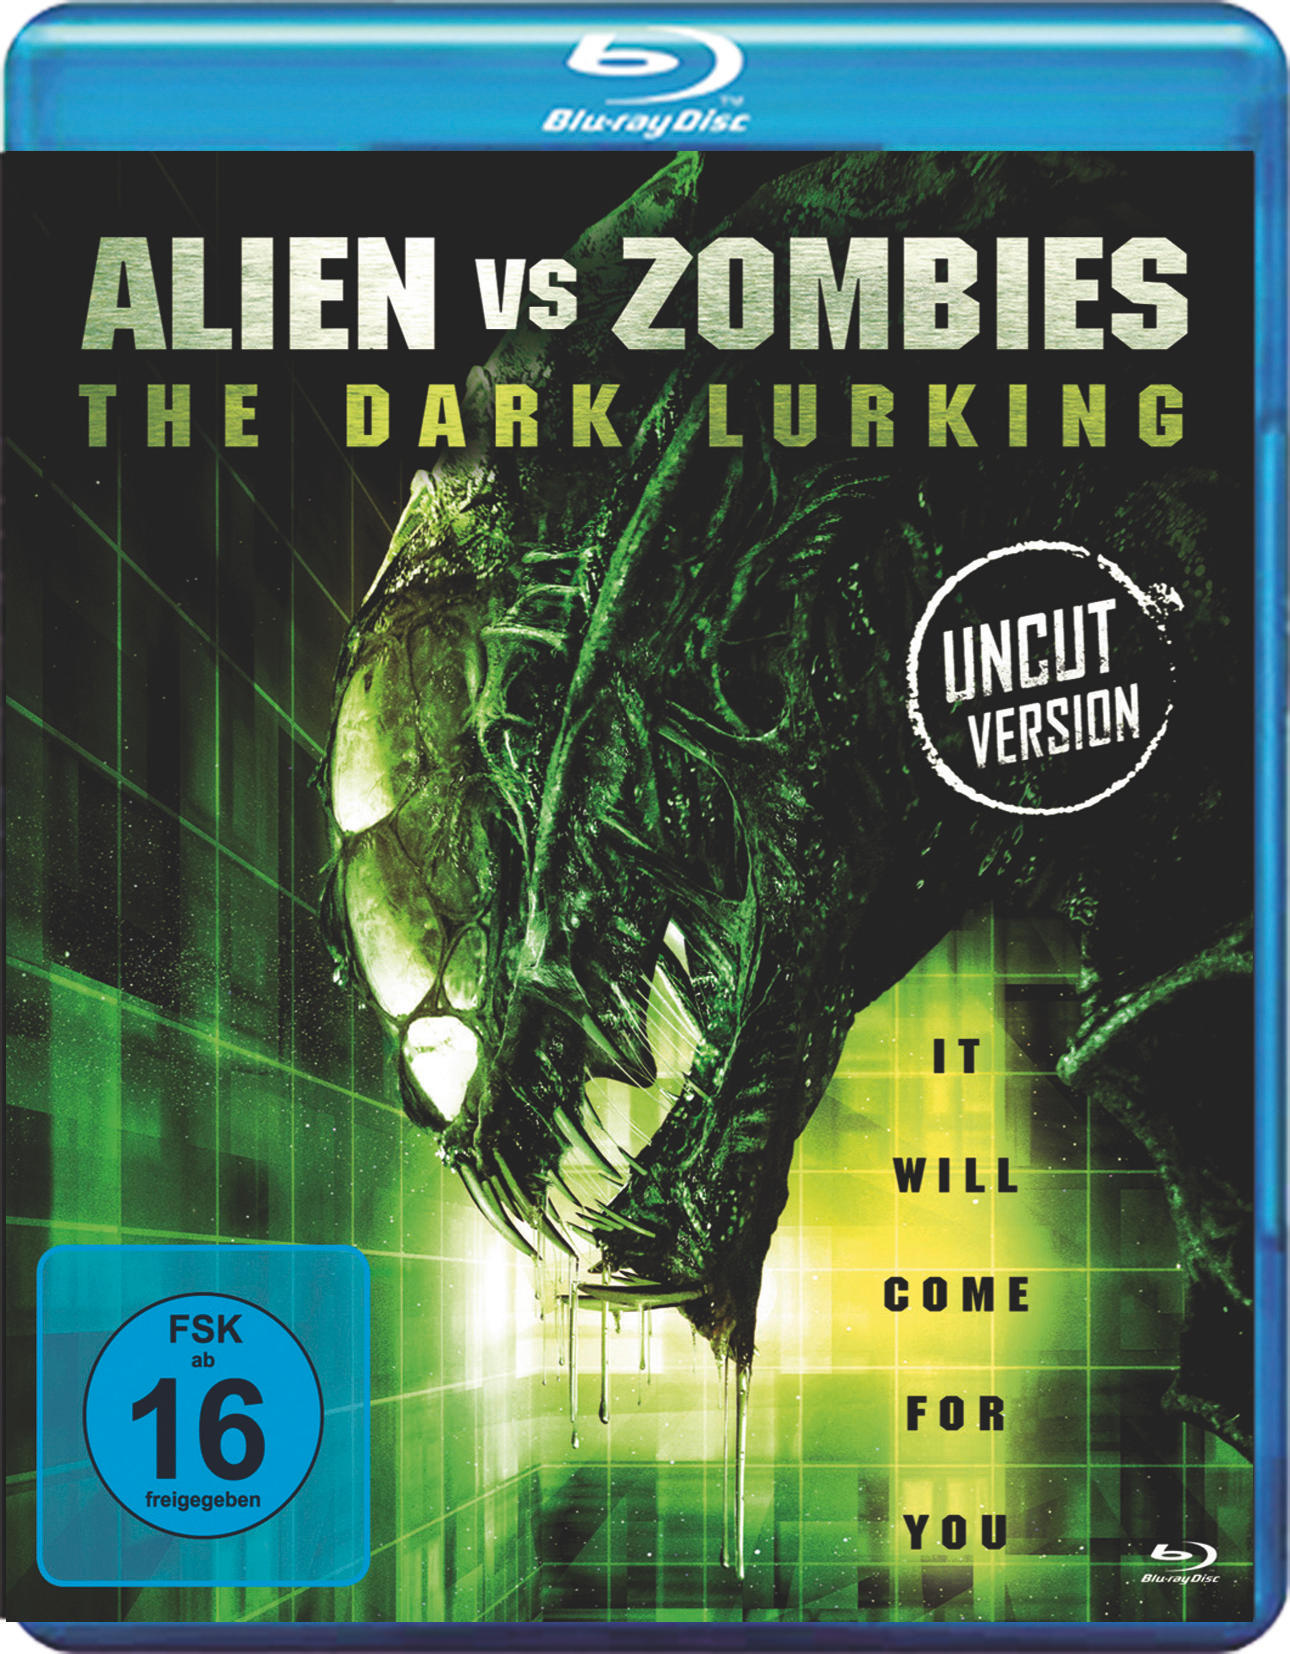 vs Zombies Alien Blu-ray